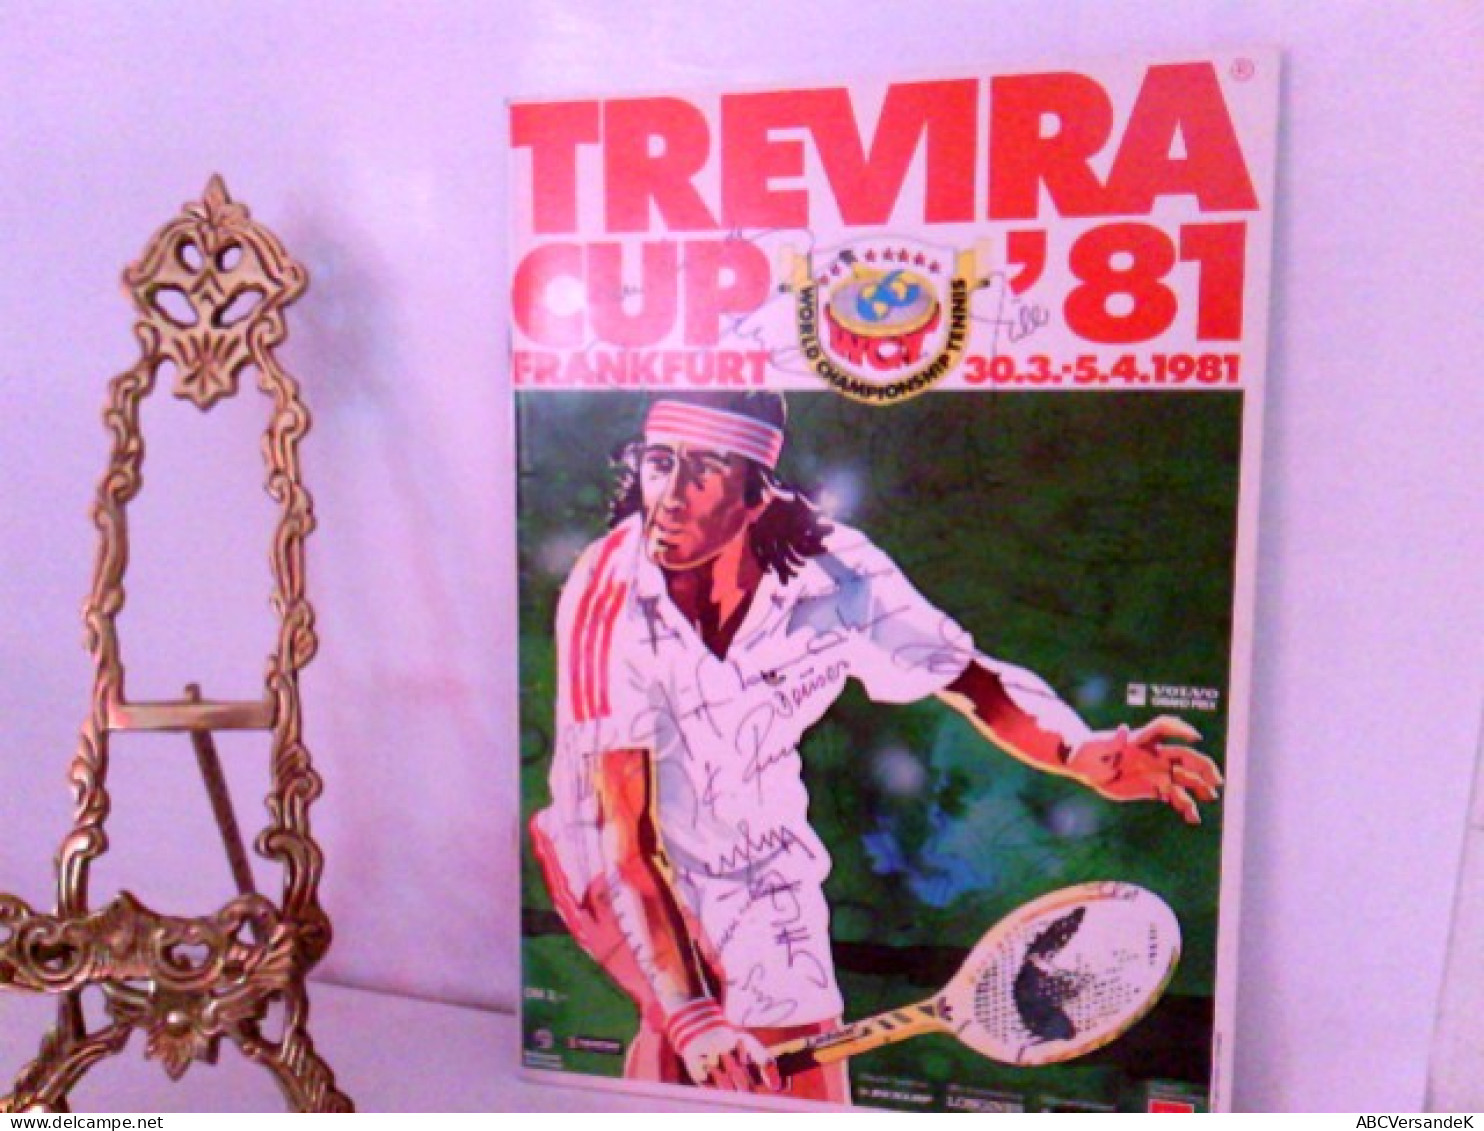 World Championship Tennis - TREVIRA CUP '81 Festhalle Frankfurt 30.03. - 5.04 1981 - Signierte Bücher